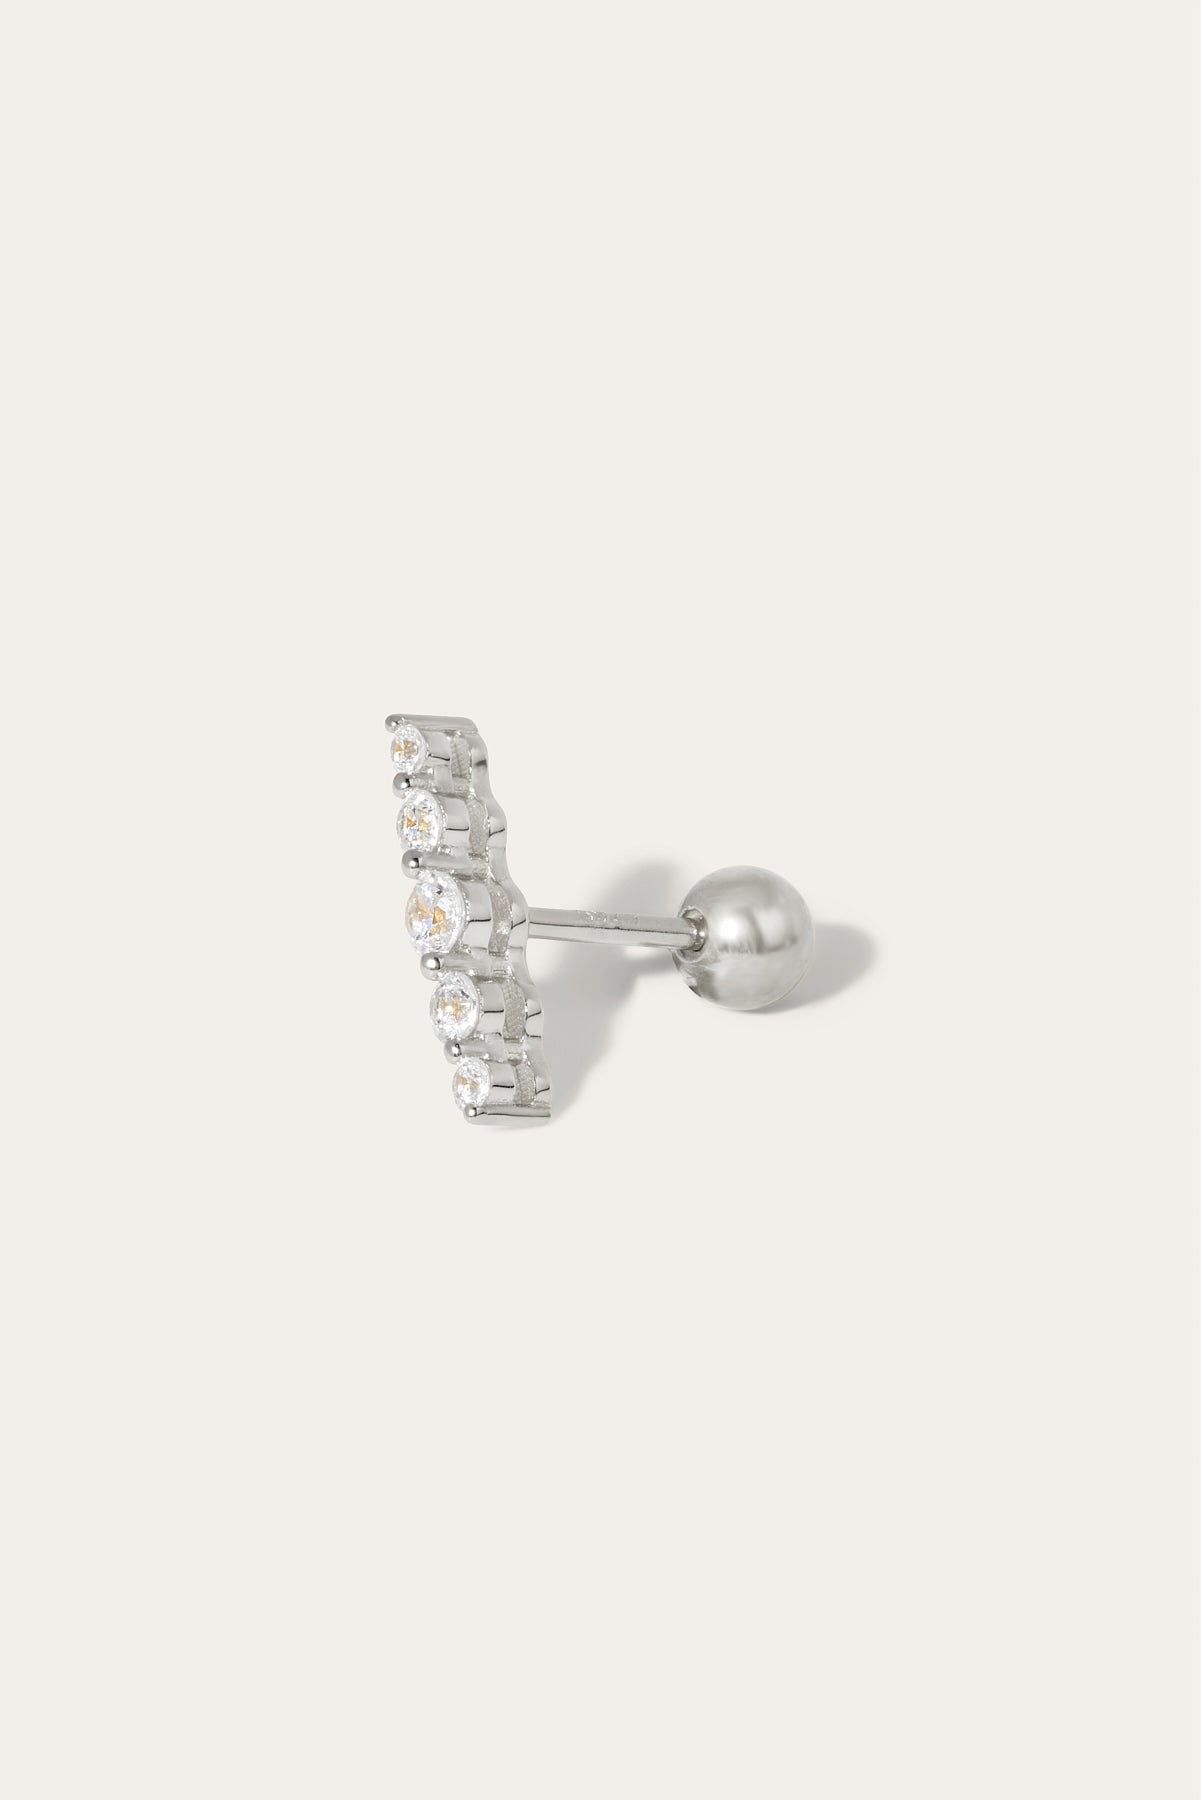 Large "True Love" sterling silver stud earring (ball screw)